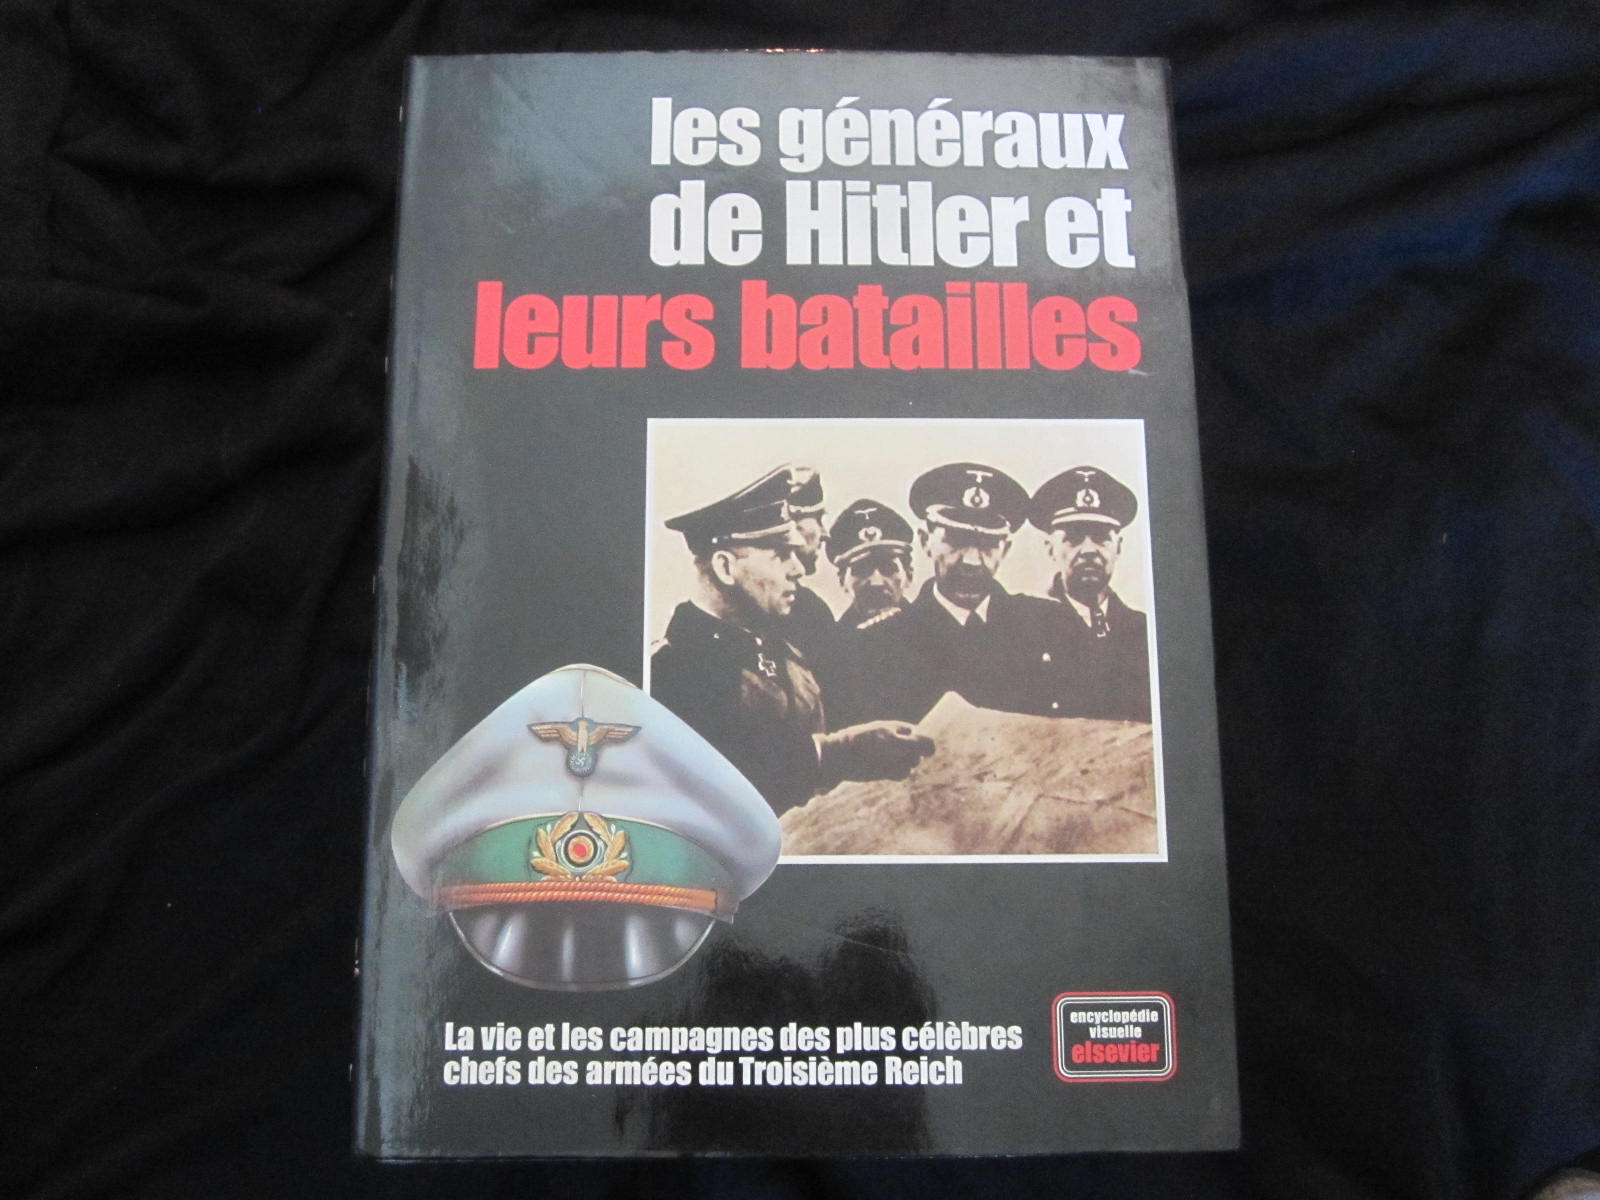 Les Gnraux de Hitler et leurs Batailles. La vie et les campagnes des plus clbres chefs du Troisime Reich. Encyclopdie visuelle Elsevier.